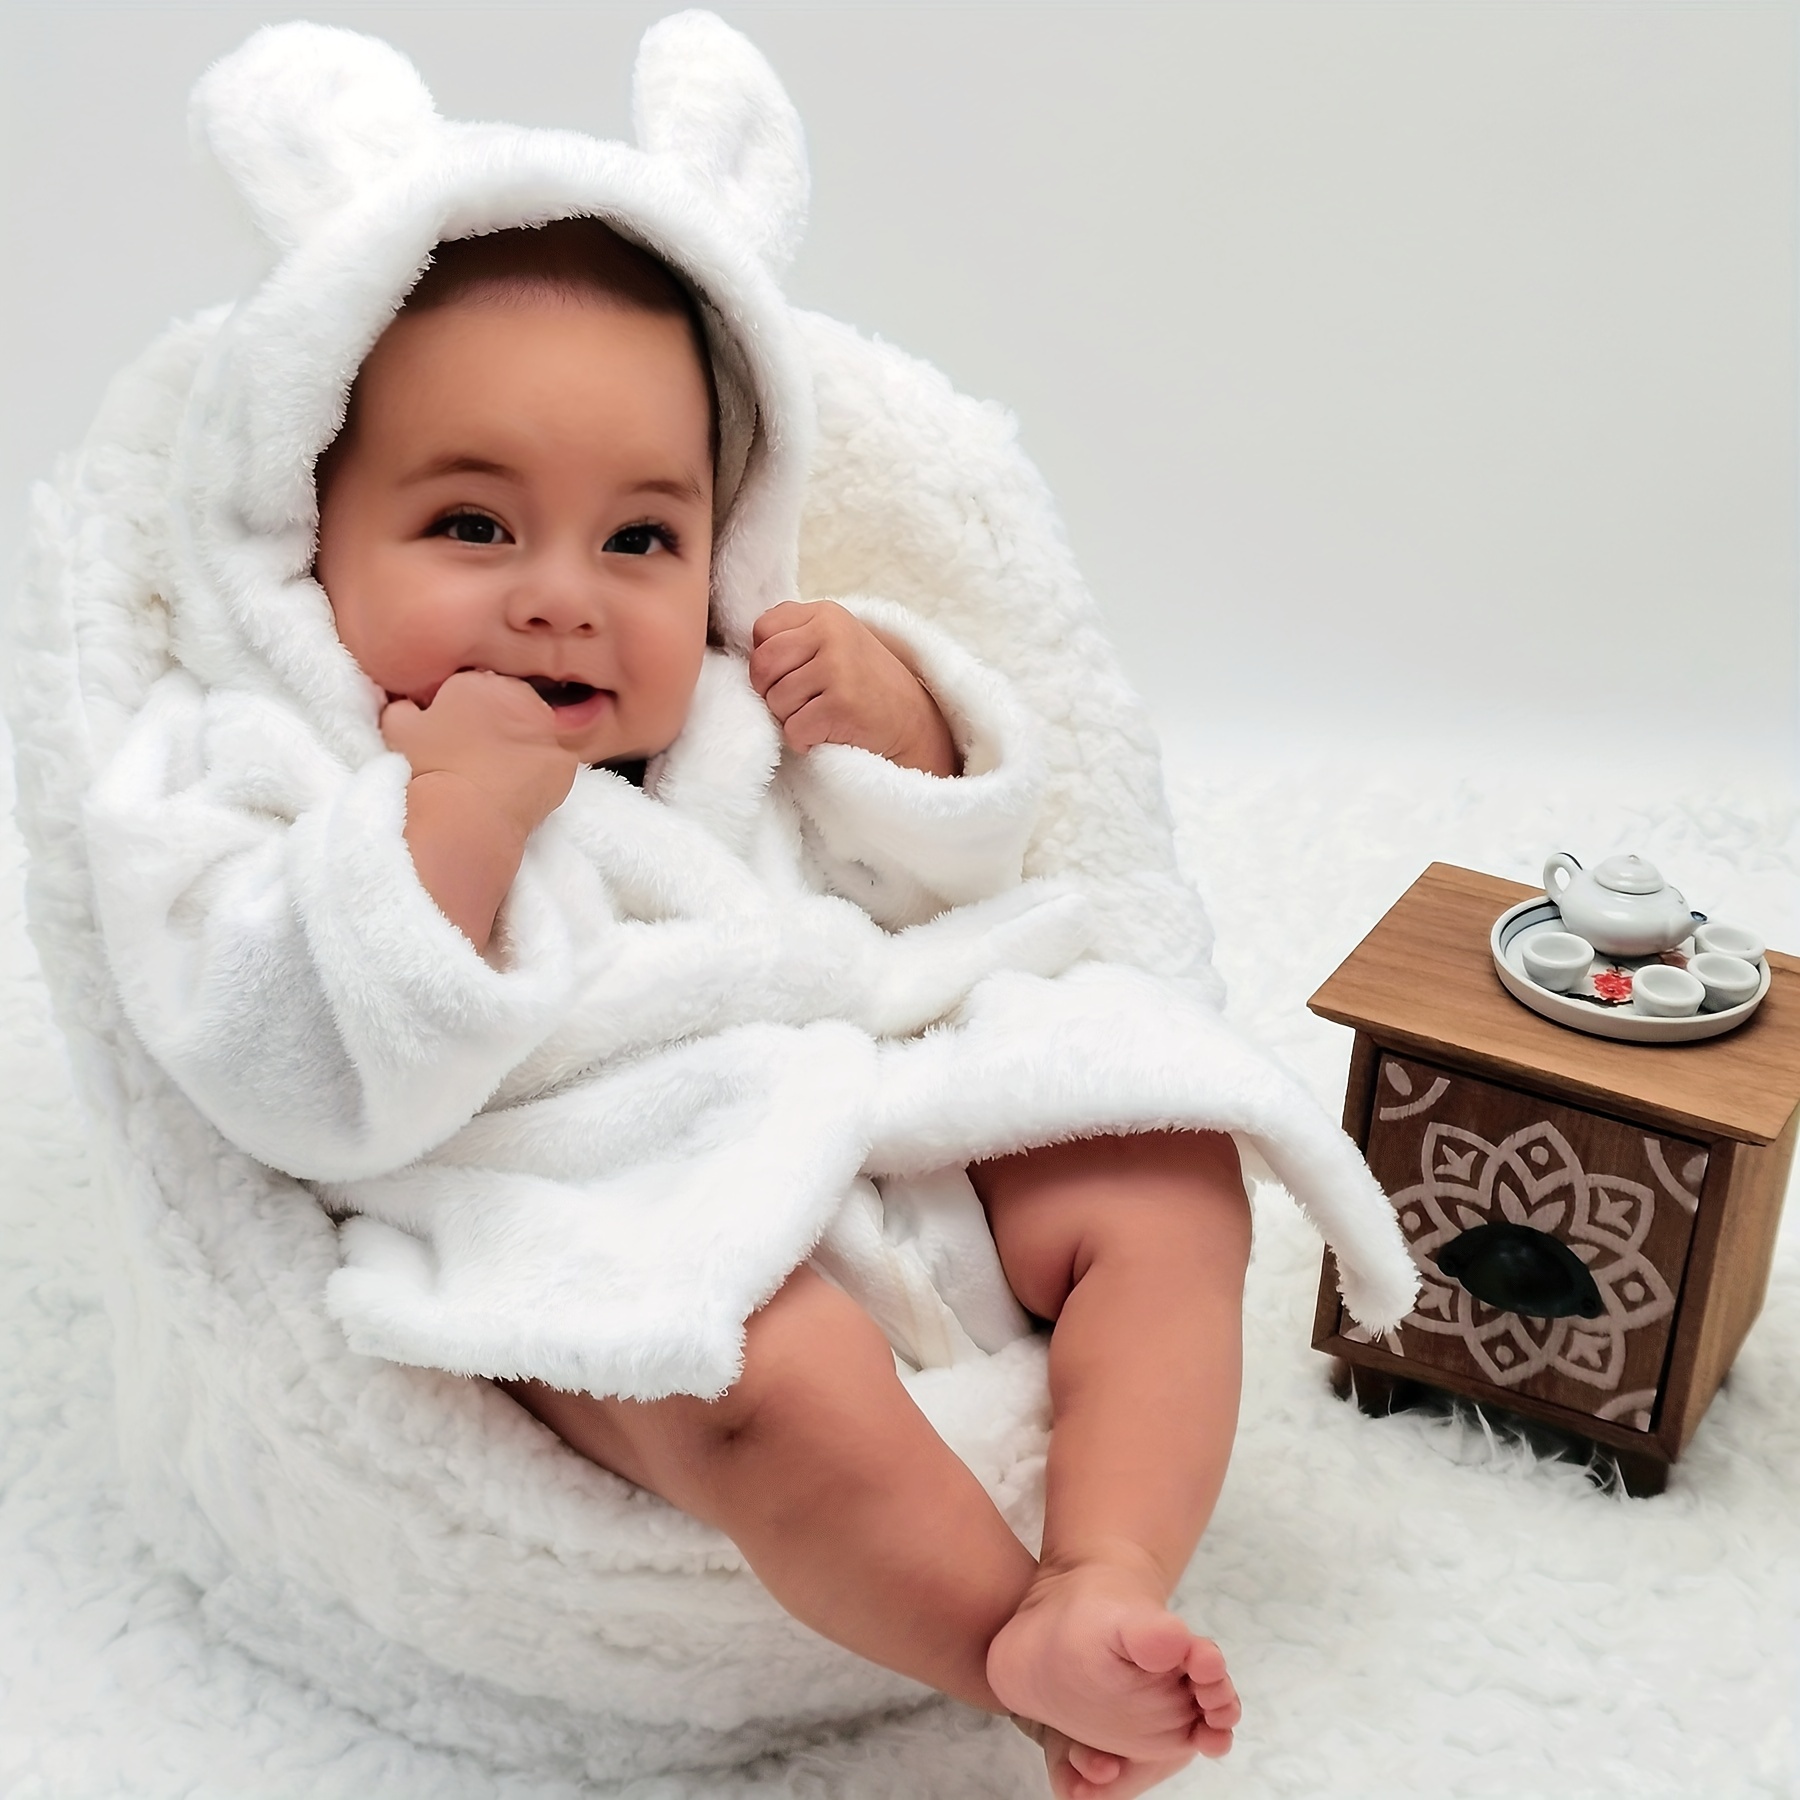 ベビーギフト バスローブ、ホワイトナイトガウン新生児写真アクセサリーパジャマ新しい赤ちゃんの写真撮影服豪華なバスタオル